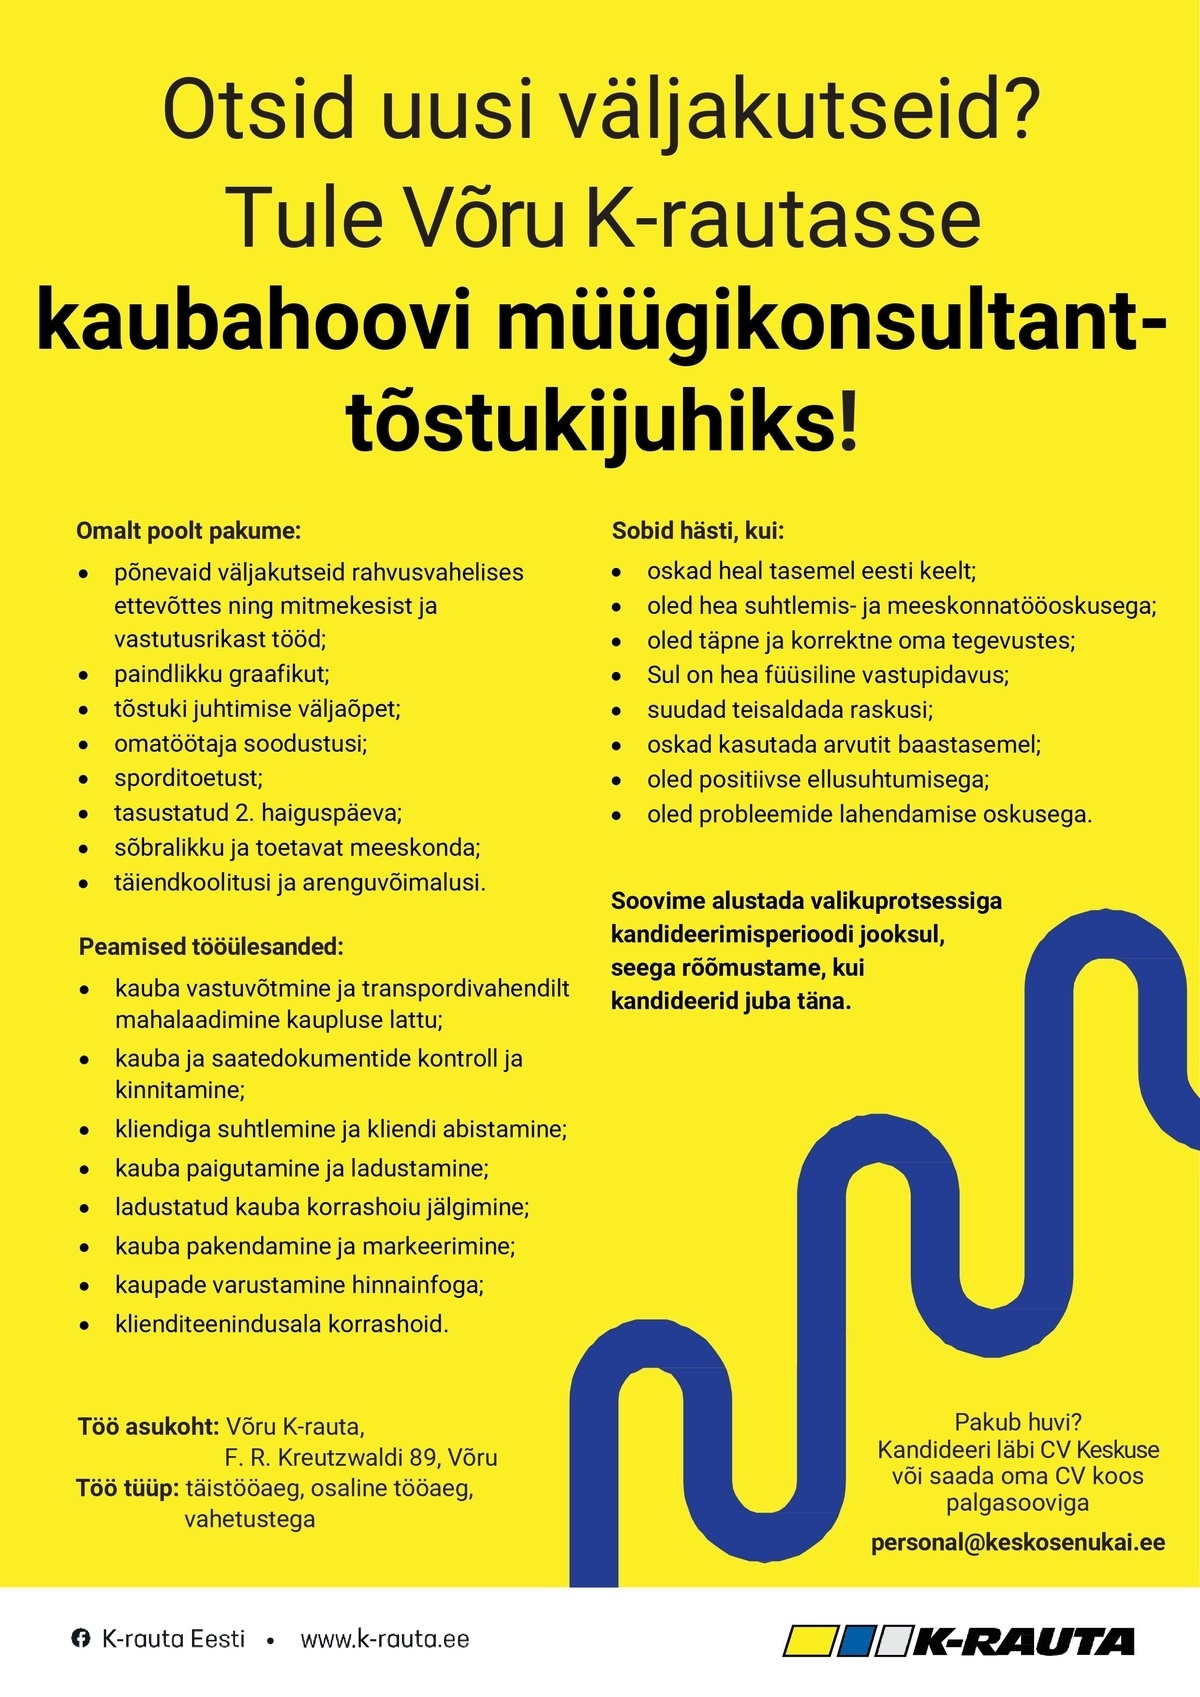 Kesko Senukai Estonia AS Kaubahoovi müügikonsultant-tõstukijuht Võru K-rauta